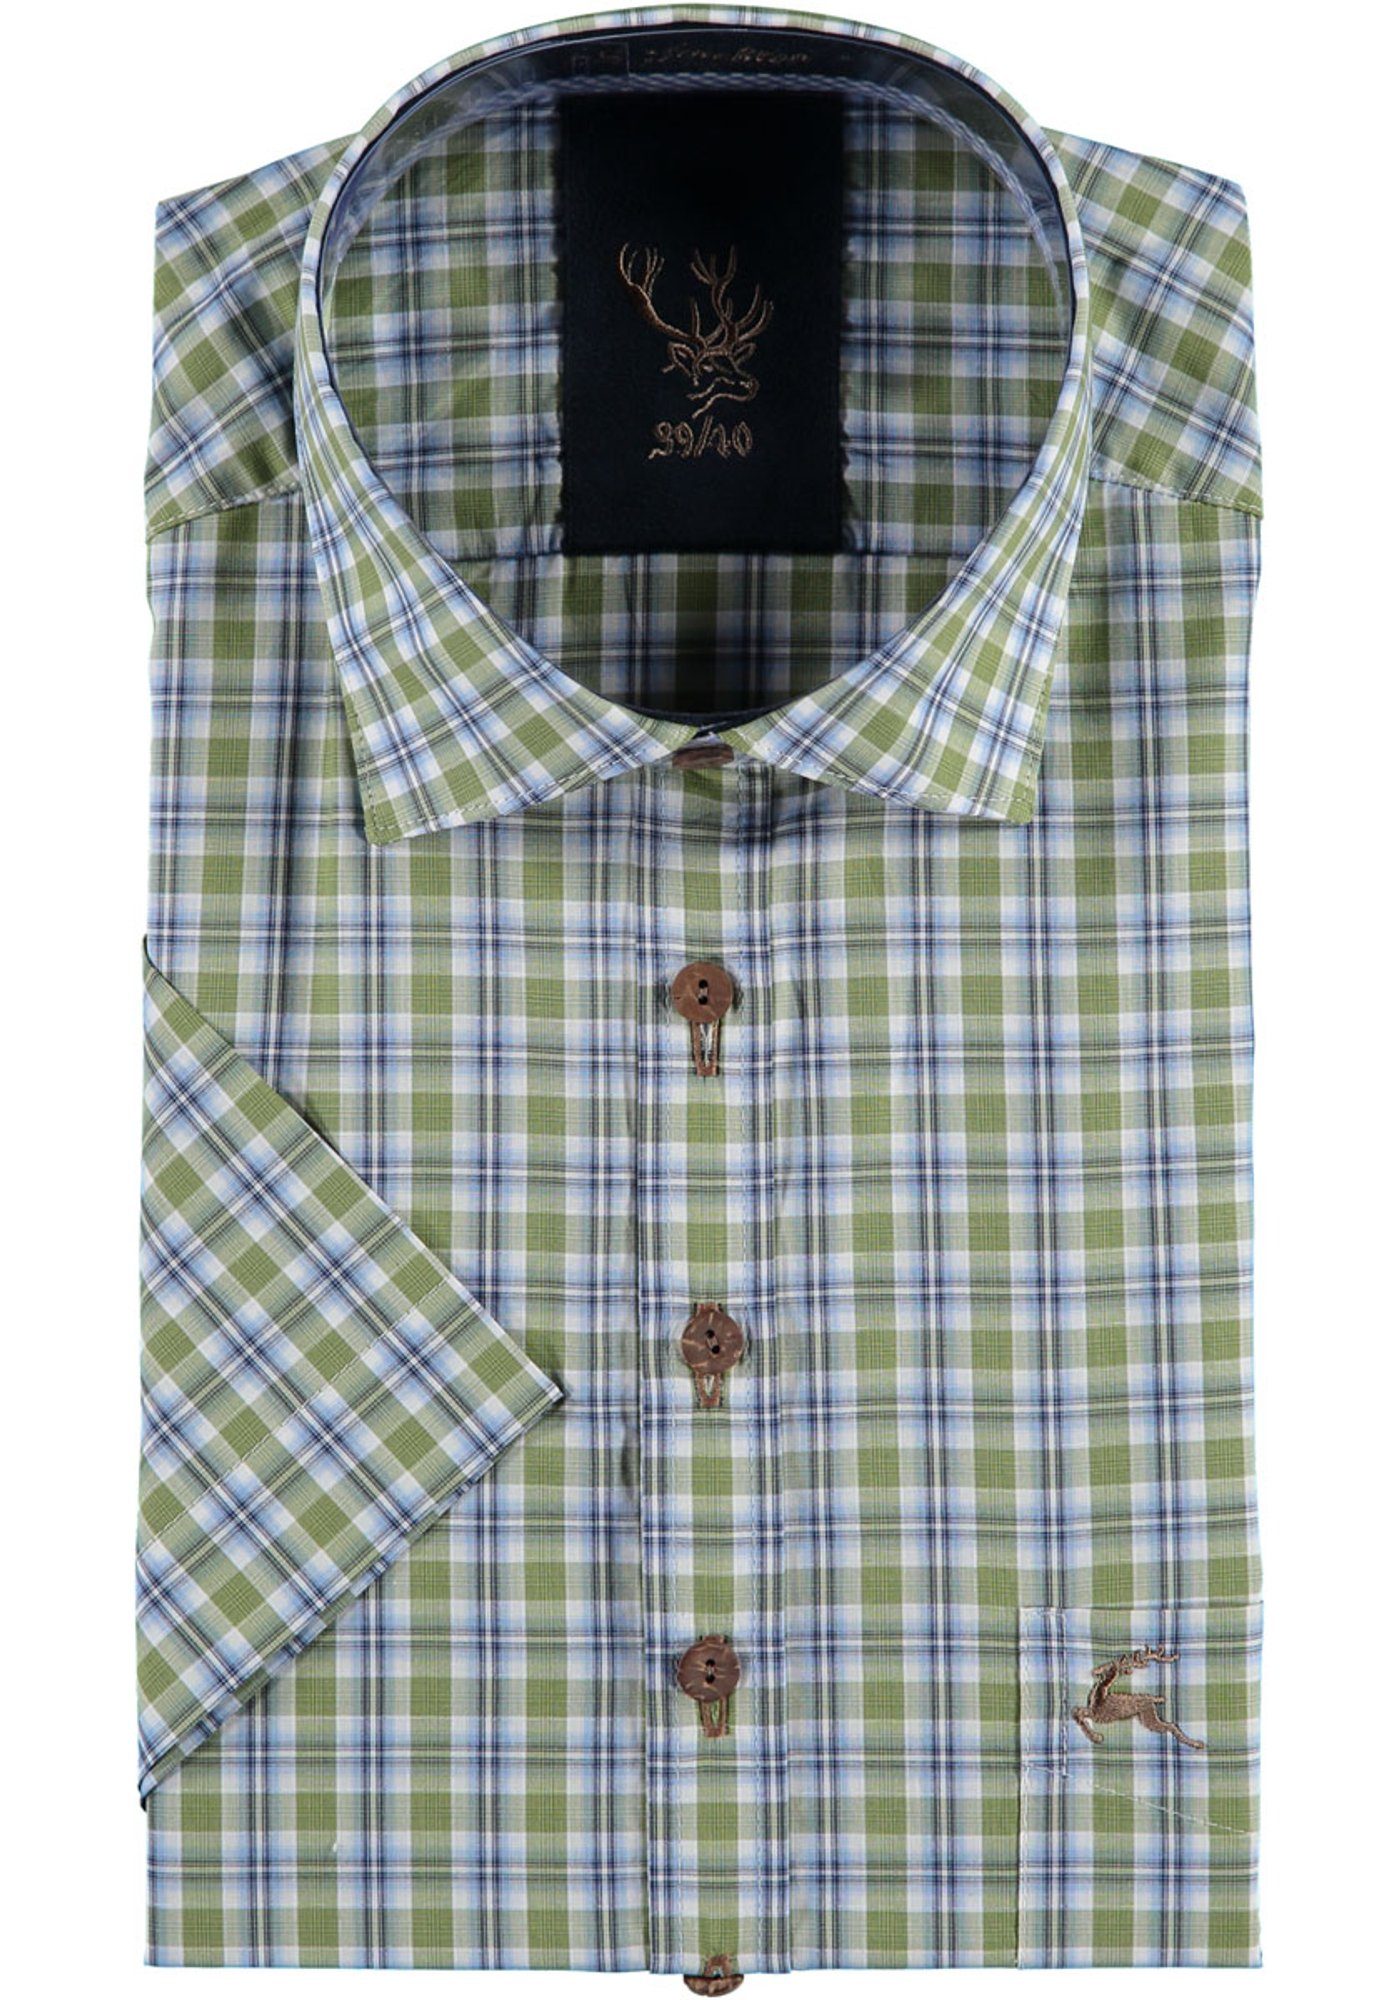 OS-Trachten Trachtenhemd Azecu Kurzarmhemd mit Hirsch-Stickerei auf der Brusttasche khaki/schlamm | Trachtenhemden